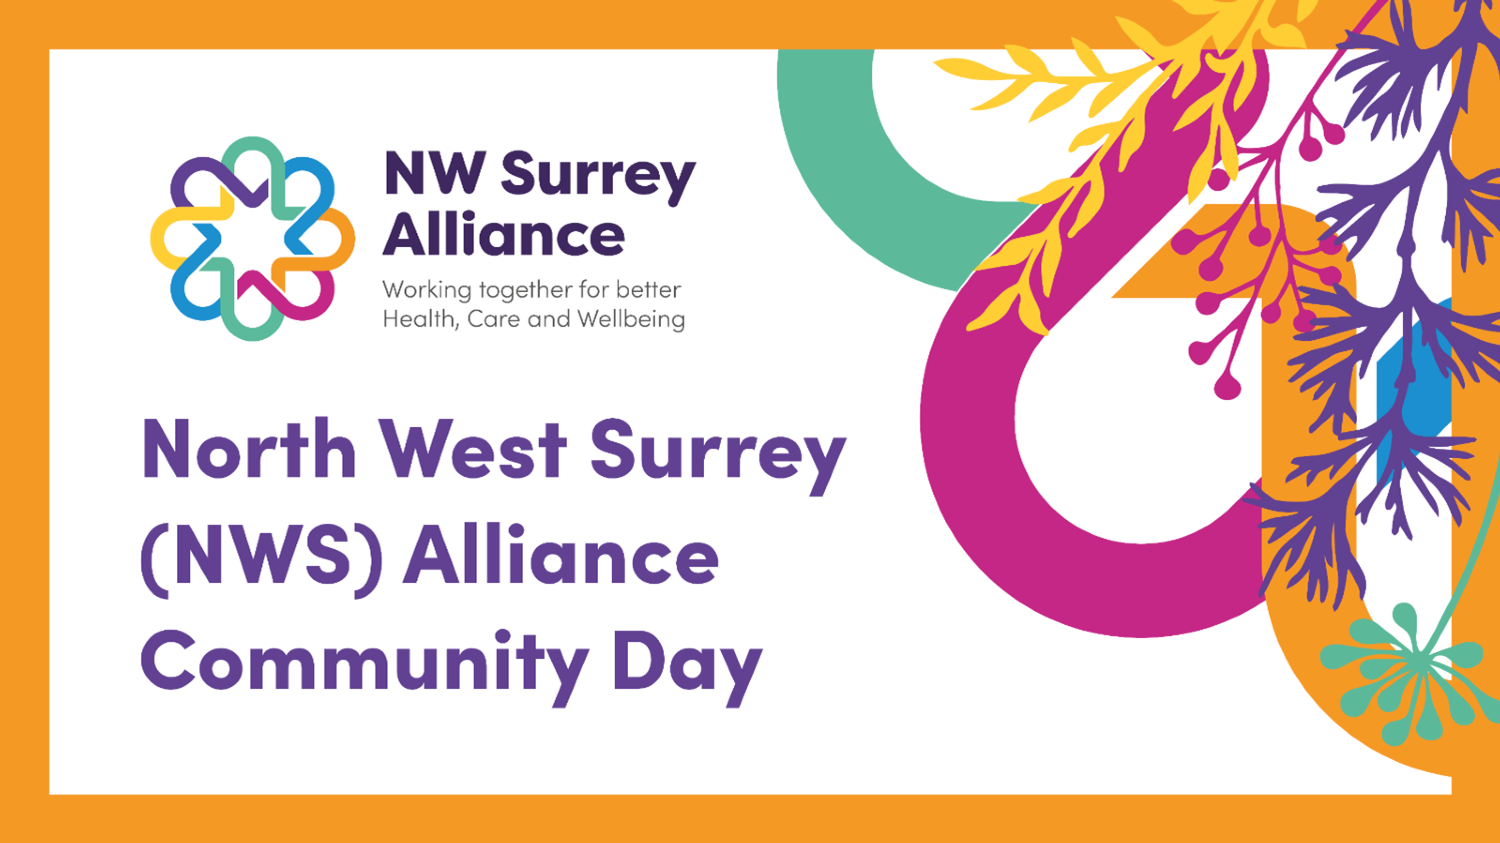 North West Surrey Community Day branding